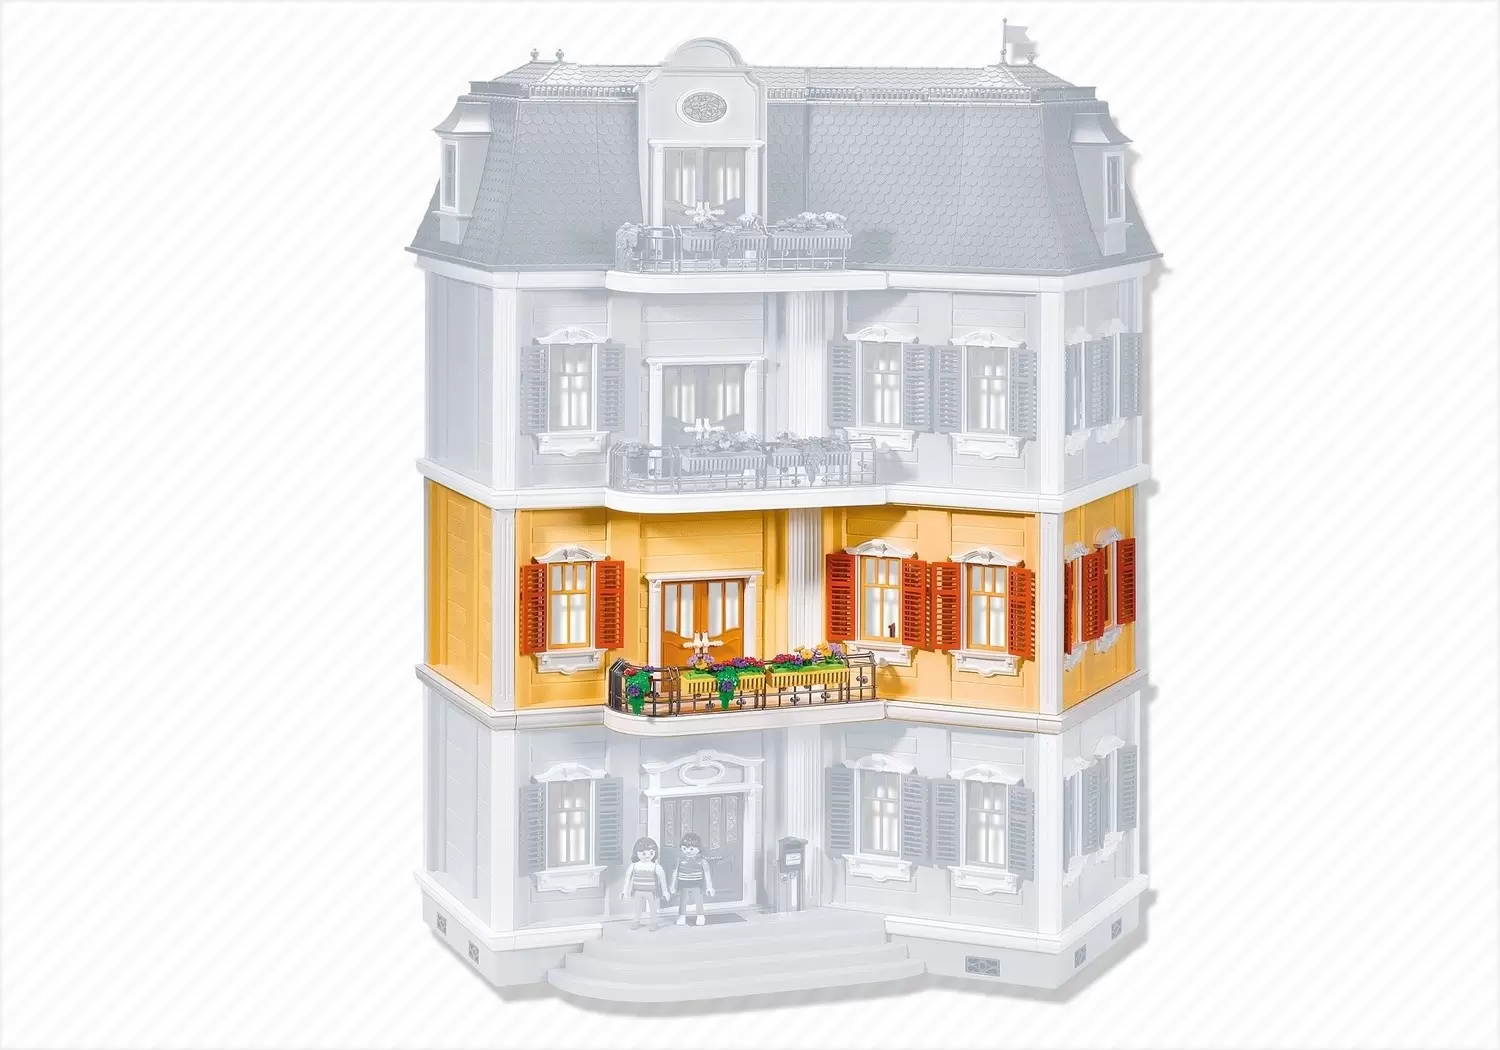 Extensions de la maison traditionnelle de Playmobil (Dollhouse) 